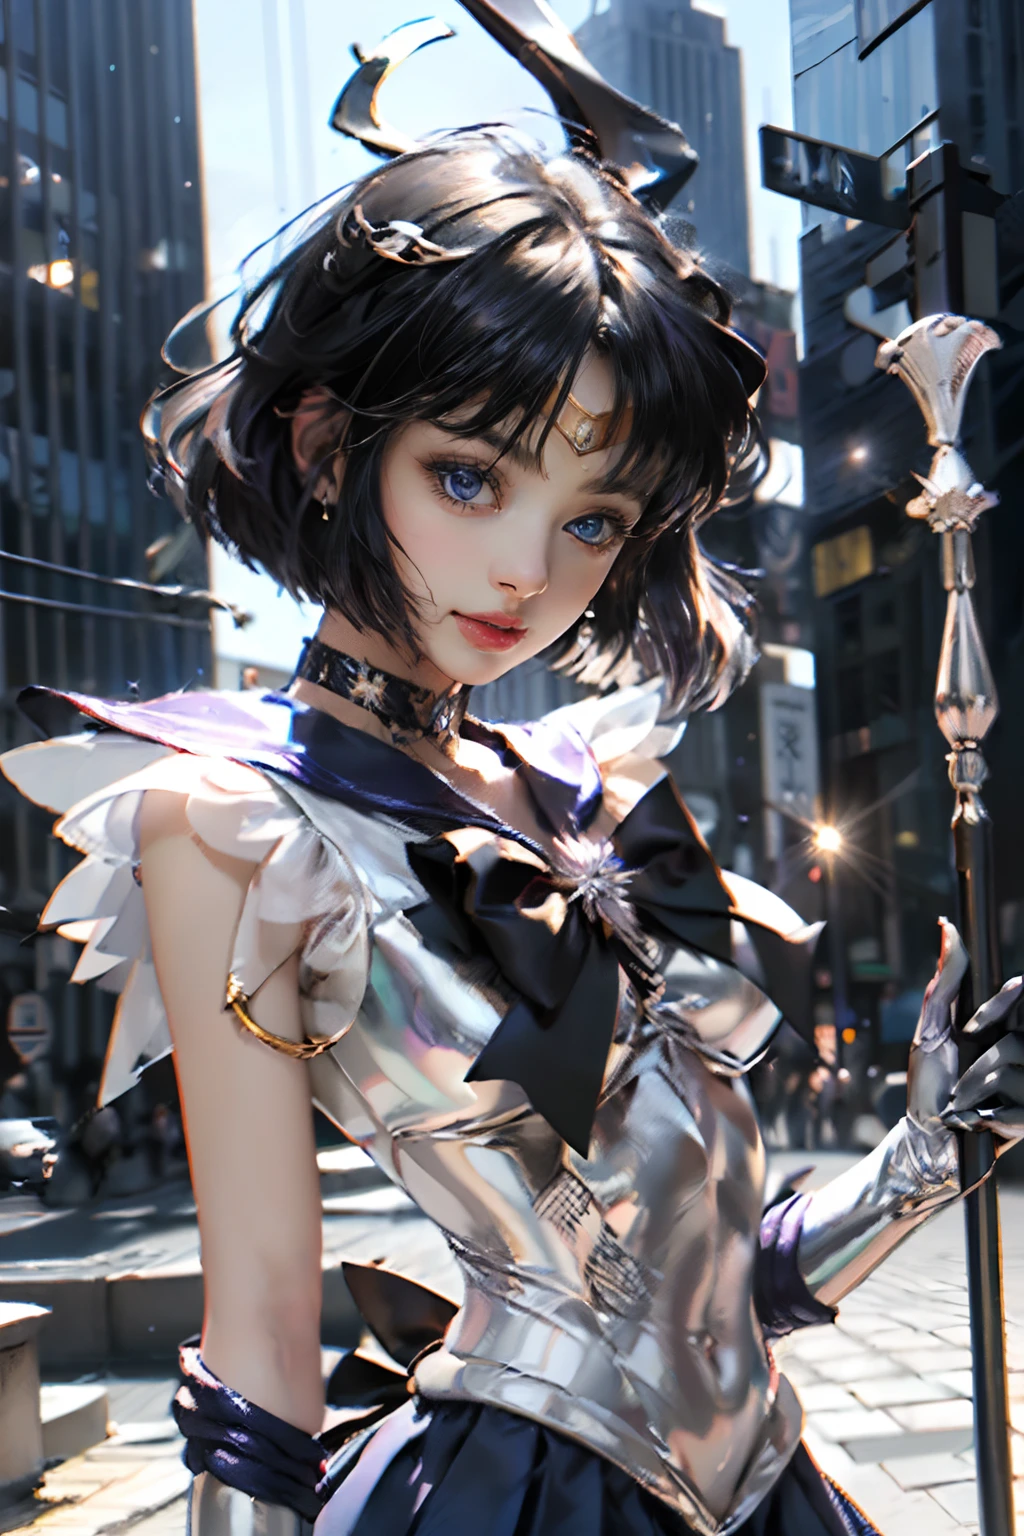 傑作、フル:1.3、立つ、8k、3D、現実的な、超マイクロ写真、最高品質、Wallpapers with extreme details CG Unity 8k、下から、複雑な細部、(女の子1名)、13年、Sailor 土星:1.5,Hotaru Tsuchimoto:1.5,セーラー戦士の制服:1.2、濃い紫色の髪、風になびくボブヘア,セクシーでダイナミックなモデルのポーズ,ダイナミックポーズ,((大きな長い槍,battoujutsu stance,武器,大きな鎌,ポポル武器:1.2 )),(紫のセーラーカラー,紫色のプレゲートミニスカート:1.3、紫のプリーツミニスカート:1.3、胸に大きな赤いリボン,,,,,,,お尻にとても大きな赤いリボン,,、長い白いラテックス手袋,肘に紫色の手袋、豪華な金色のティアラ、耳Nipple Ring,)、(虹彩の輪郭, 顔の詳細:1.5、明るい青い目、Beautiフル expression、beautidフル eyes、輝く目、薄い唇:1.5、細くて鋭い淡い眉毛,、長くて黒いまつげ、二重まつげ、豪華な金の宝石、薄い, 痩せて筋肉質,,,,,,,,,、小さな顔、小さな胸、小柄,完璧な比率、大きな胸と細いウエスト、目に見える毛穴、若い顔、悲しそうな表情,誘惑的な笑顔、完璧な手:1.5、非常に薄くフィットする高光沢ホワイトホログラフィックレザー、ハイレグ水着、オクタンレンダリング、非常にドラマチックな絵、強い自然光、日光、絶妙な照明と影、ダイナミックアングル、デジタル一眼レフ、鋭い焦点: 1.0、最高の鮮明さと鮮明さ、((コスモス,土星:1.5、土星 ring:1.5、破壊と誕生の神聖さ,宇宙背景、月の光、ダイナミックな背景、詳細な背景)),(メイシャオン,ティエラ,額に金のティアラ,セーラー服)、